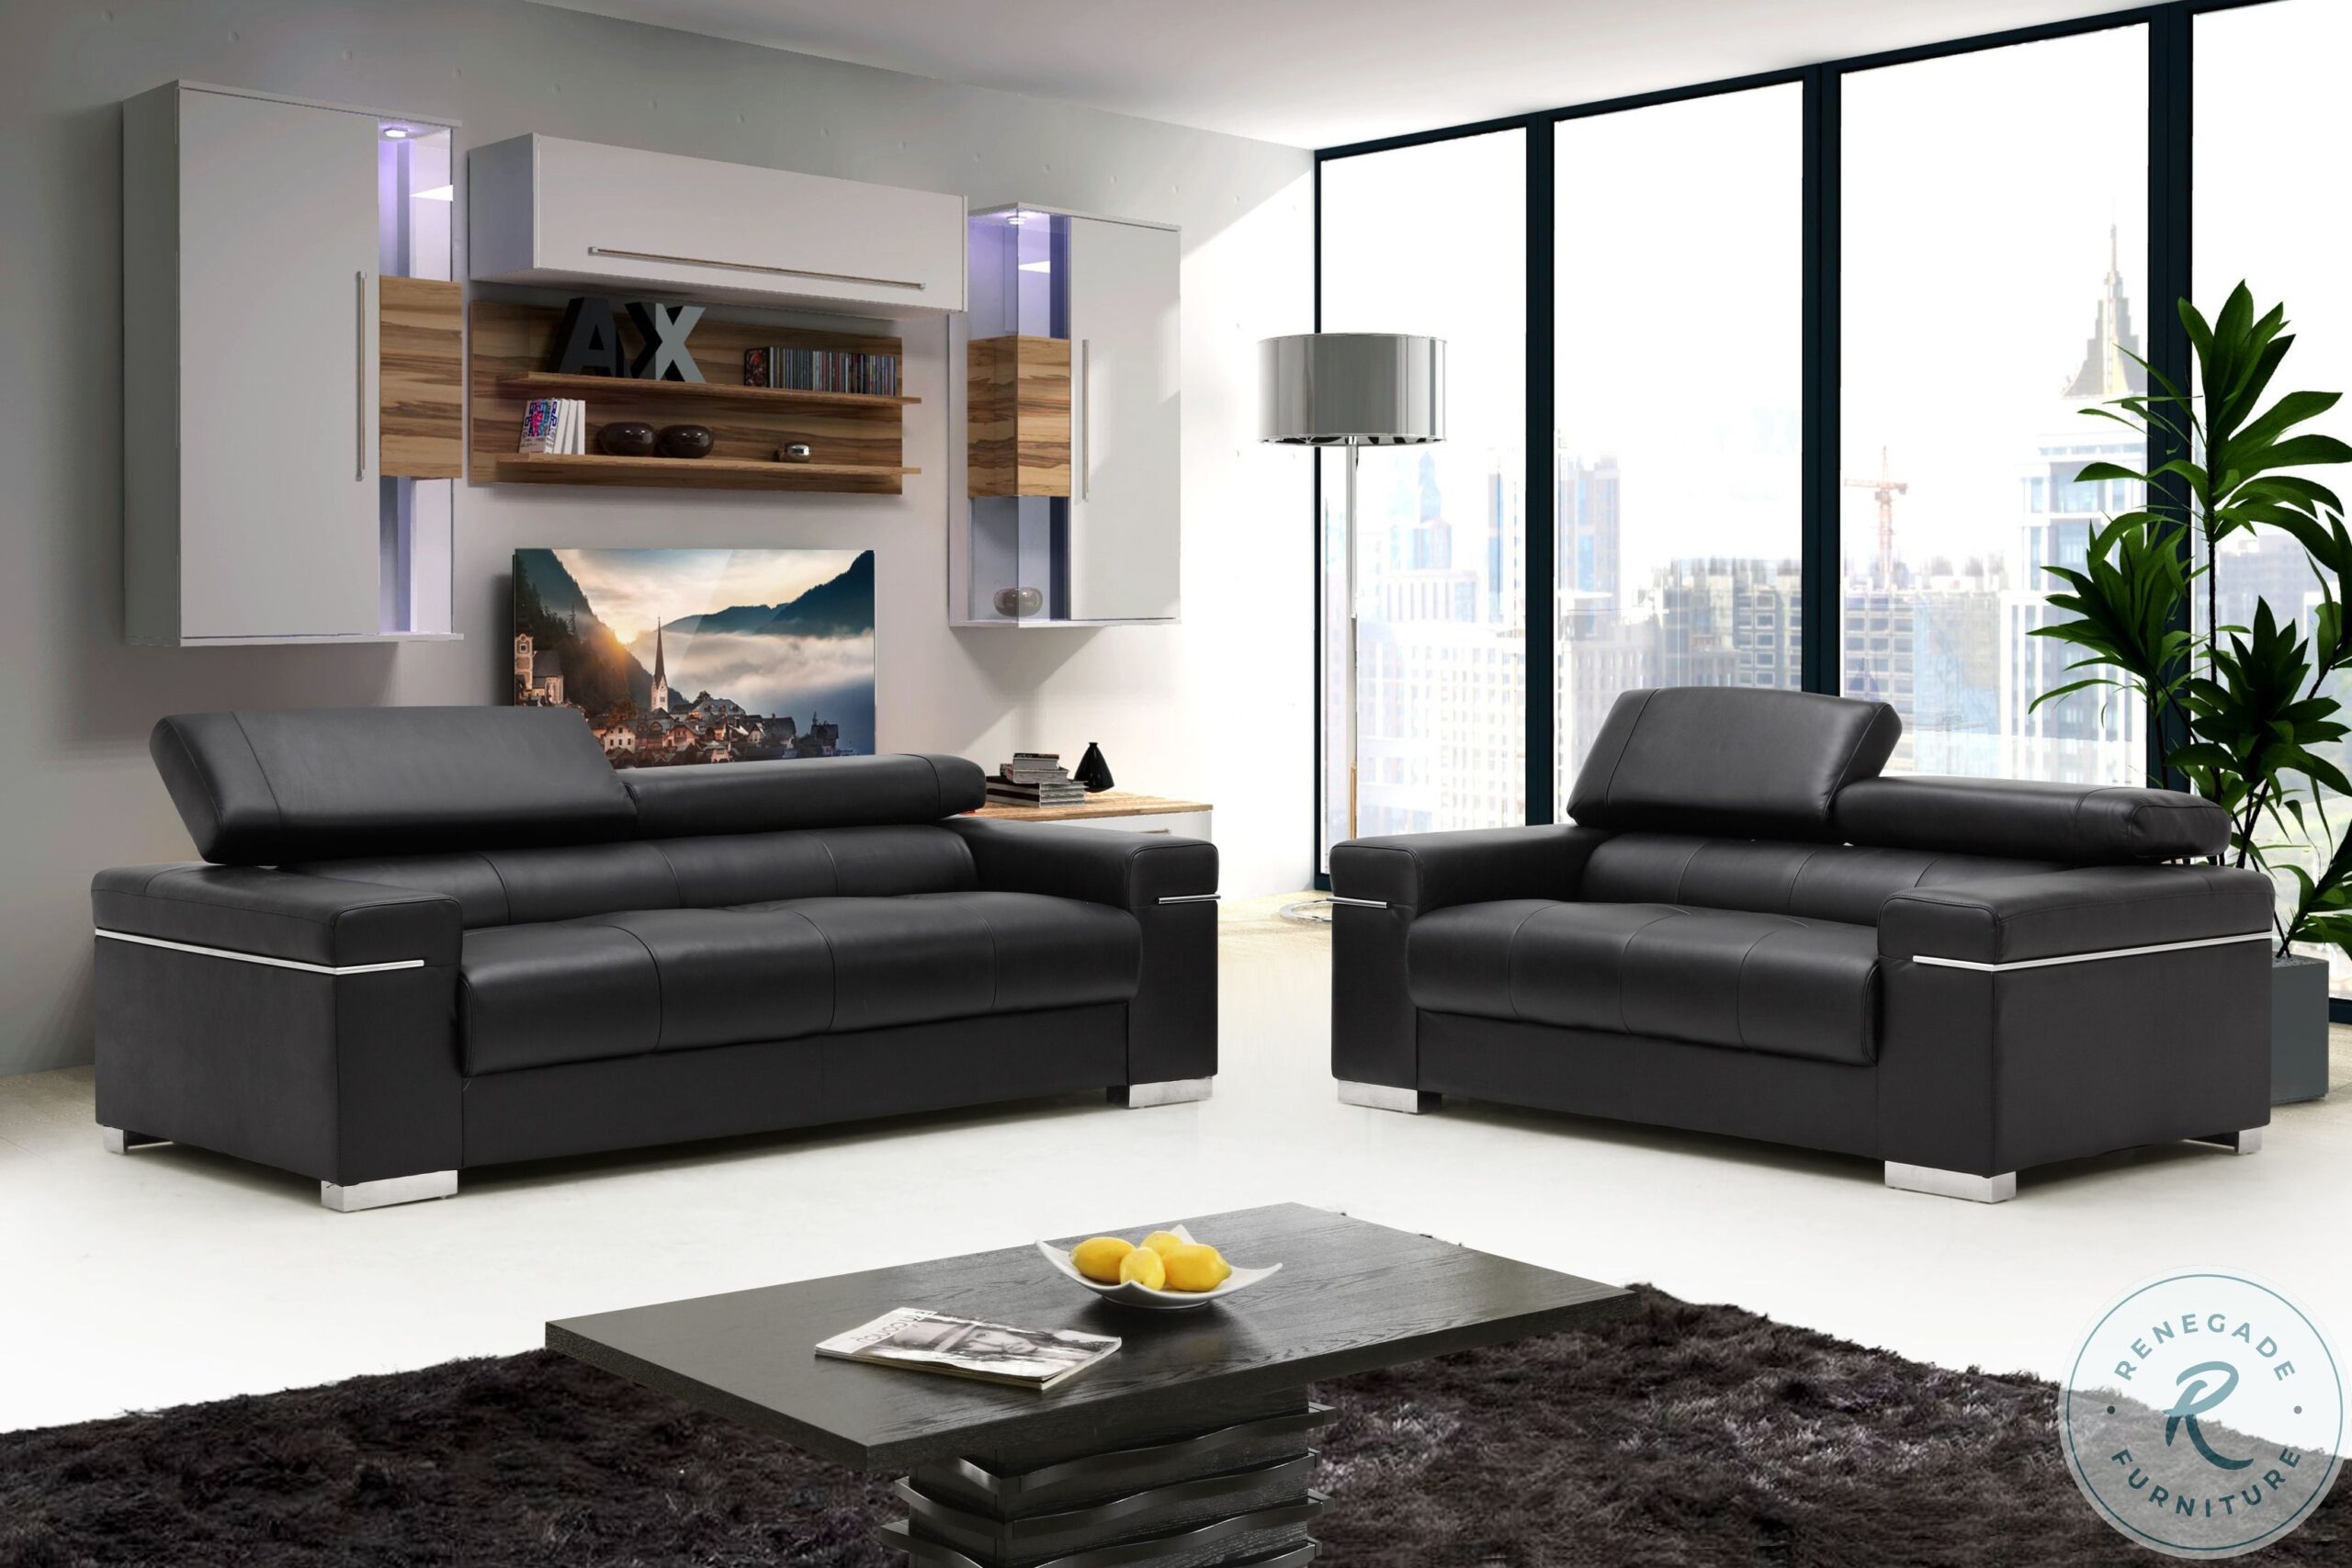 Soho Black Leather Sofa